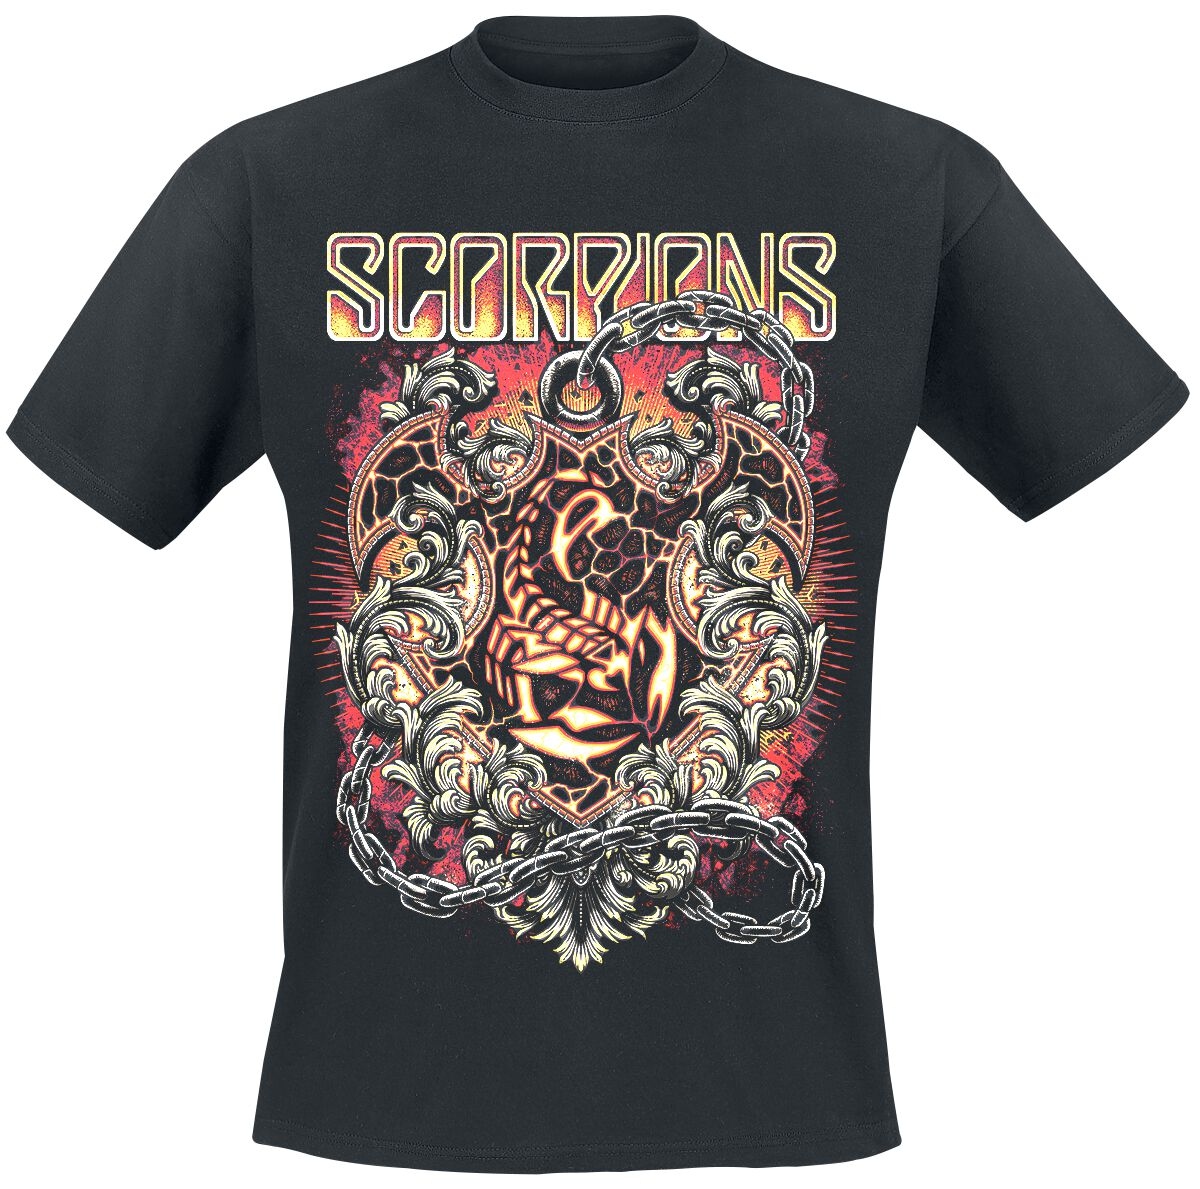 Scorpions T-Shirt - Crest In Chains - M bis 3XL - für Männer - Größe 3XL - schwarz  - Lizenziertes Merchandise!